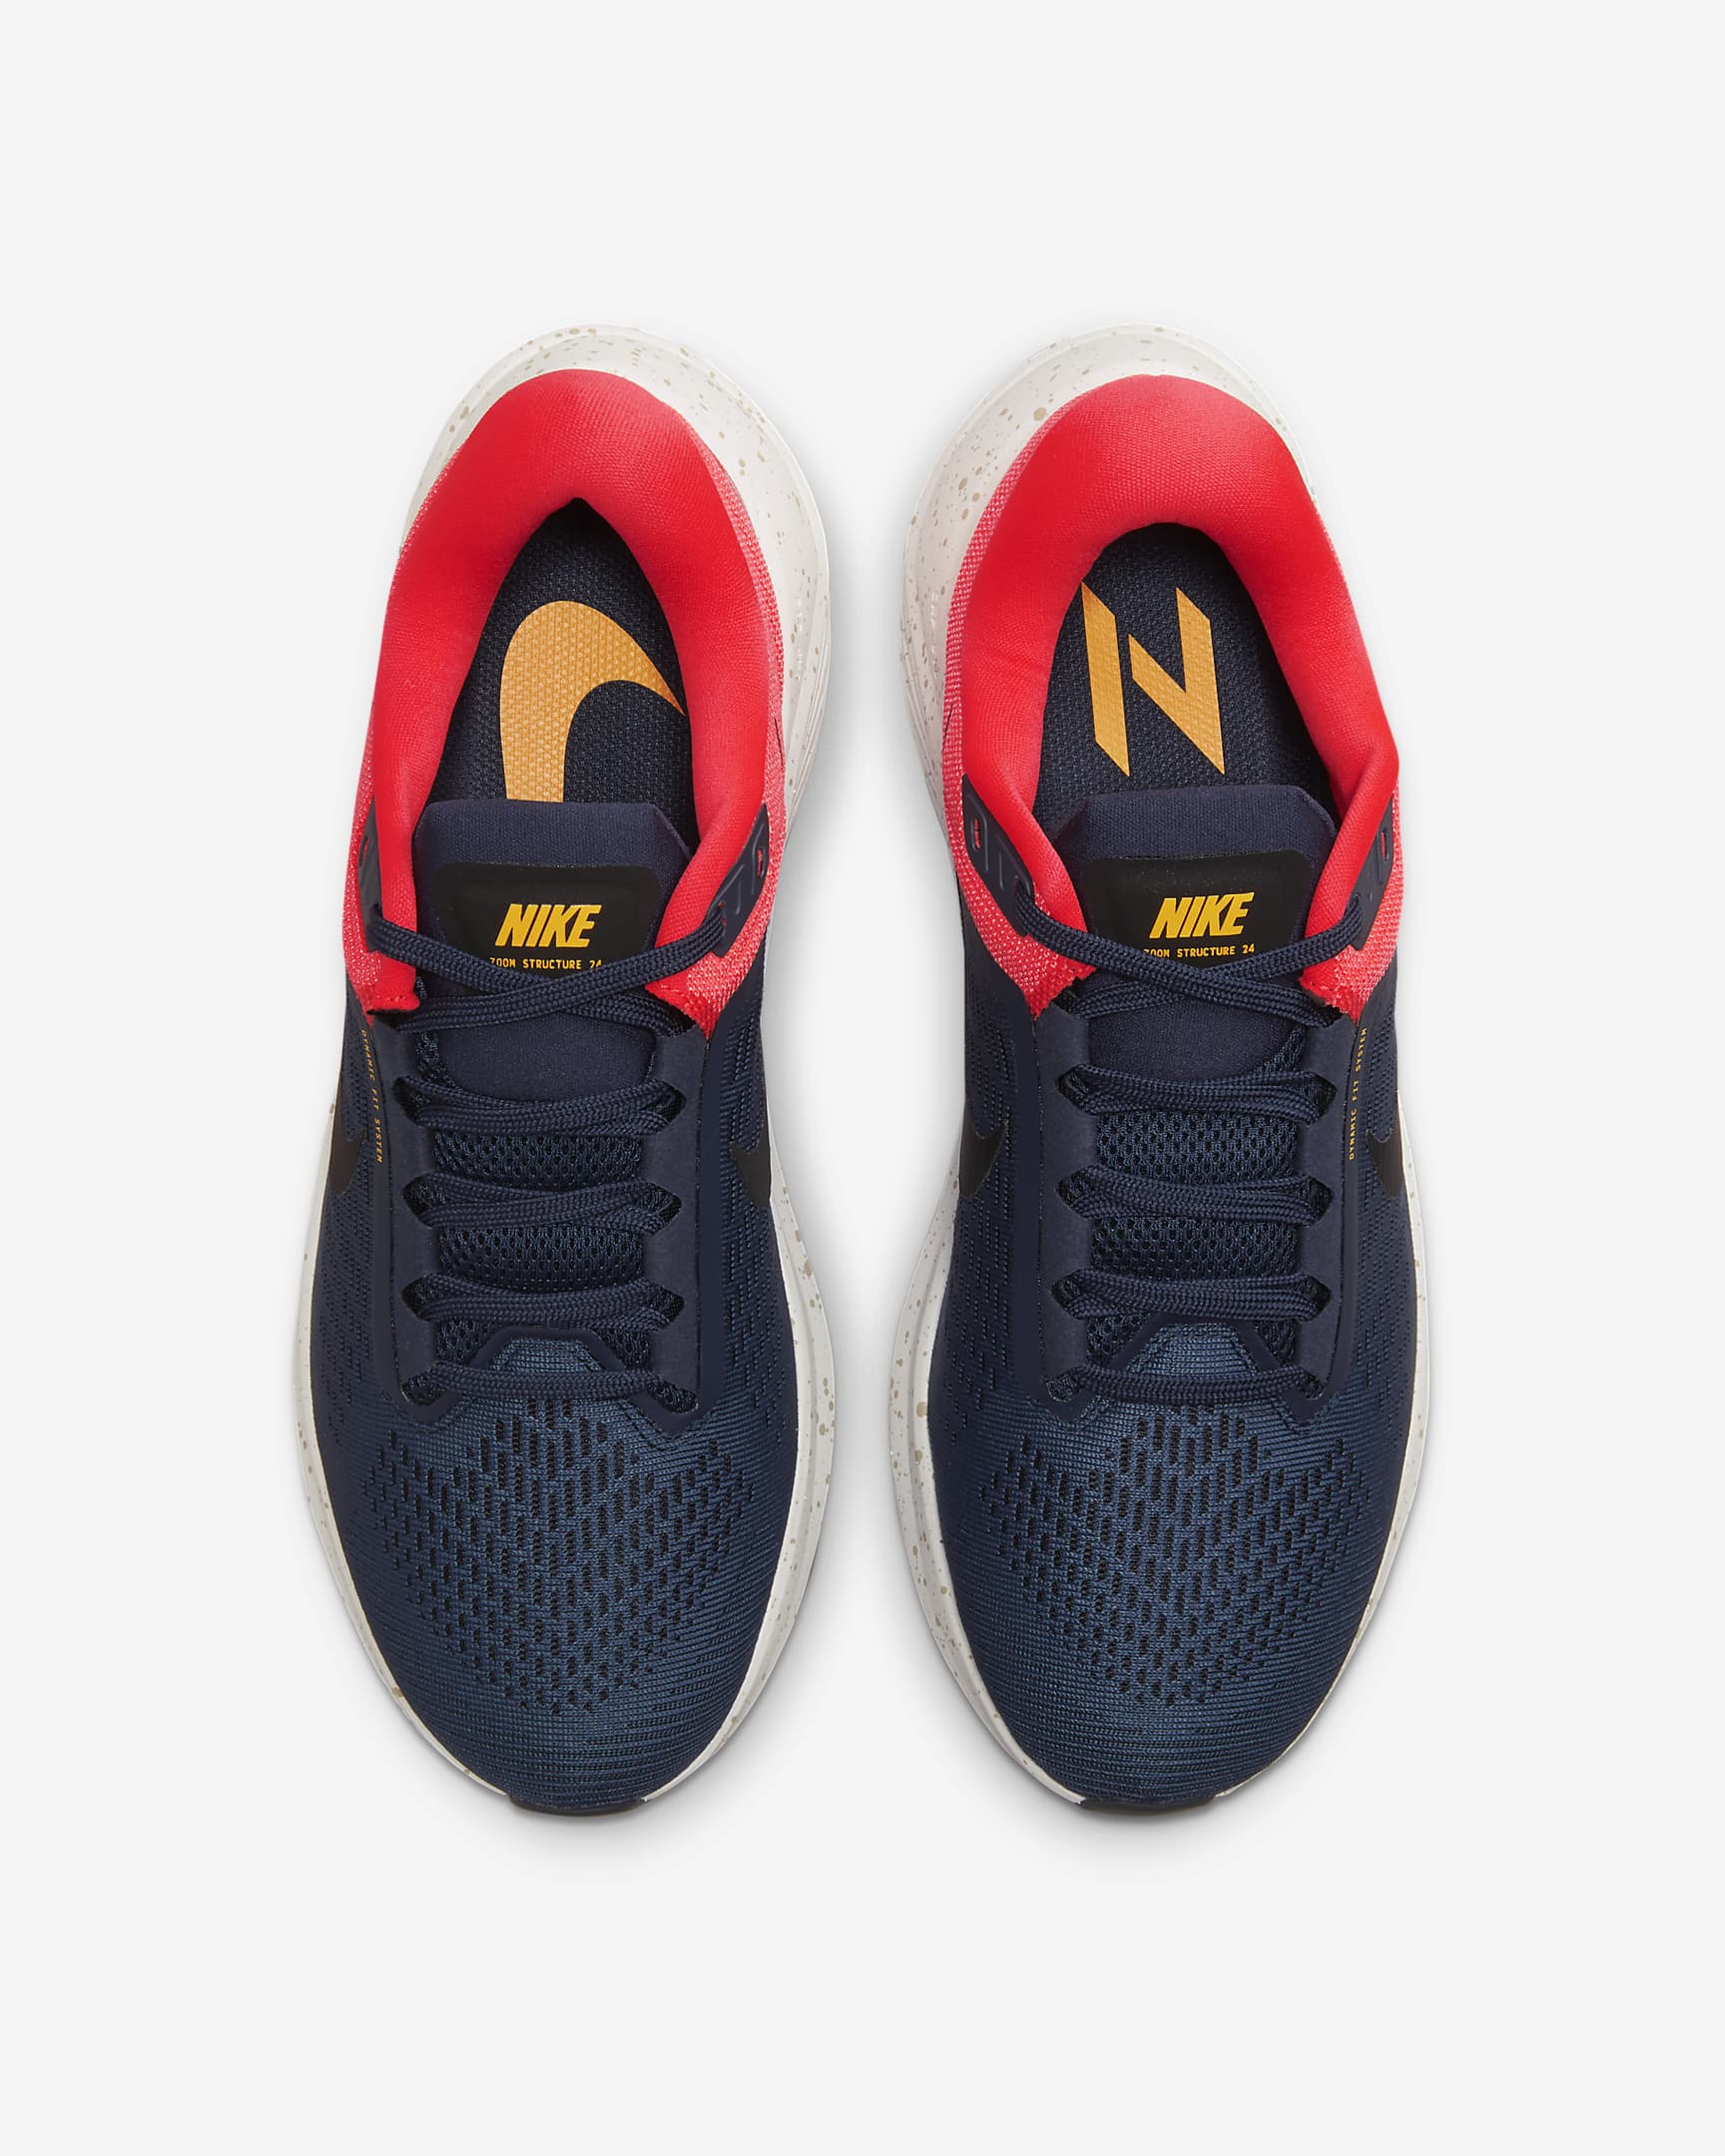 Rebotar fácil de lastimarse Álbum de graduación Nike Structure 24 Men's Road Running Shoes. Nike.com